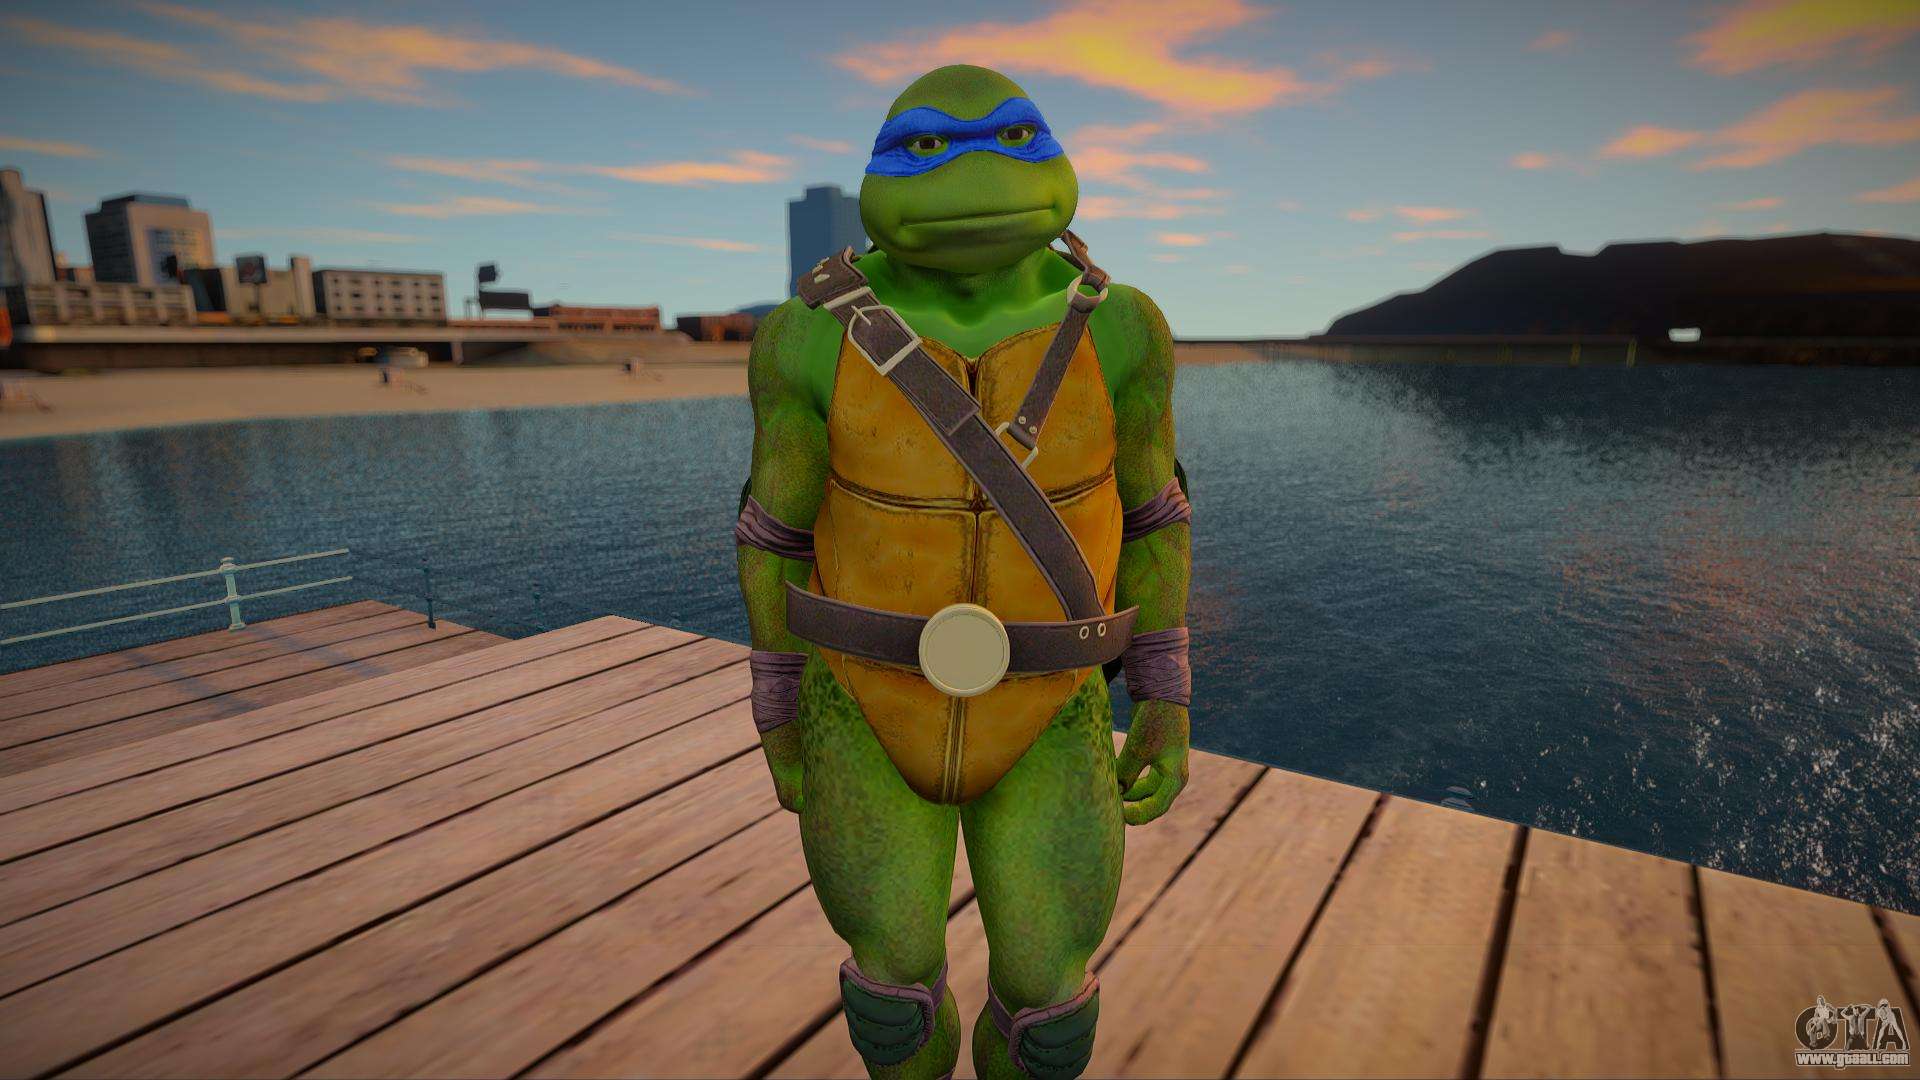 GTA V: Grand Theft Auto 5 leaked map looks like Teenage Mutant Ninja  Turtles character Leonardo - Mirror Online